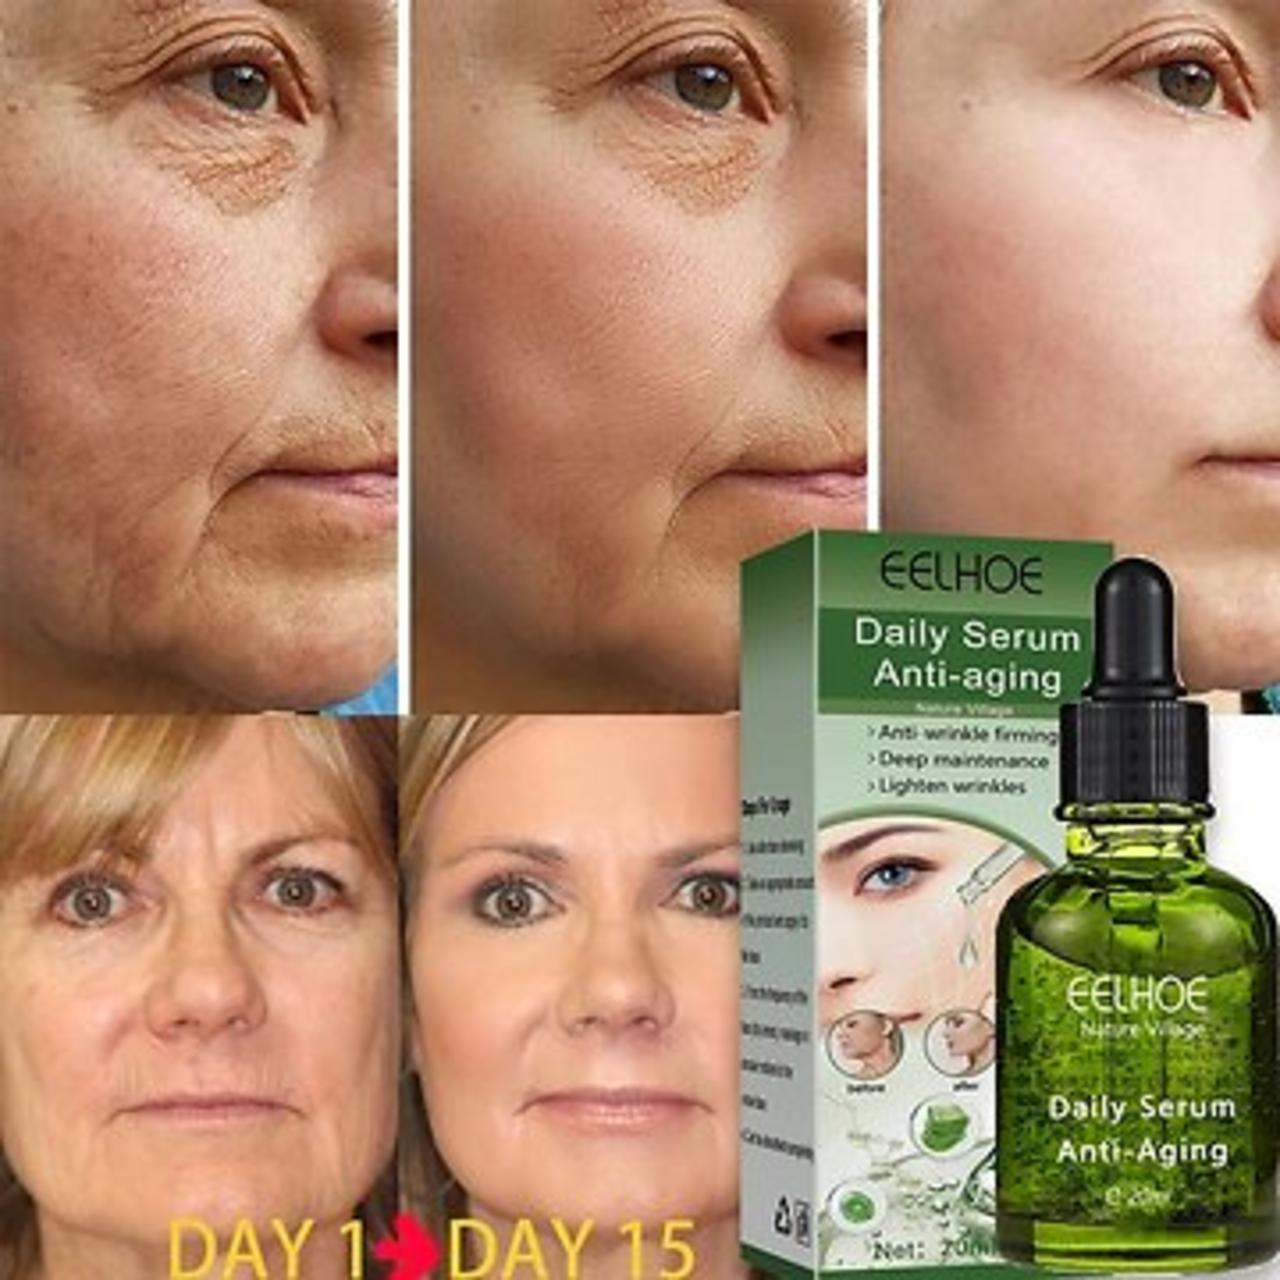 Best anti aging face serum